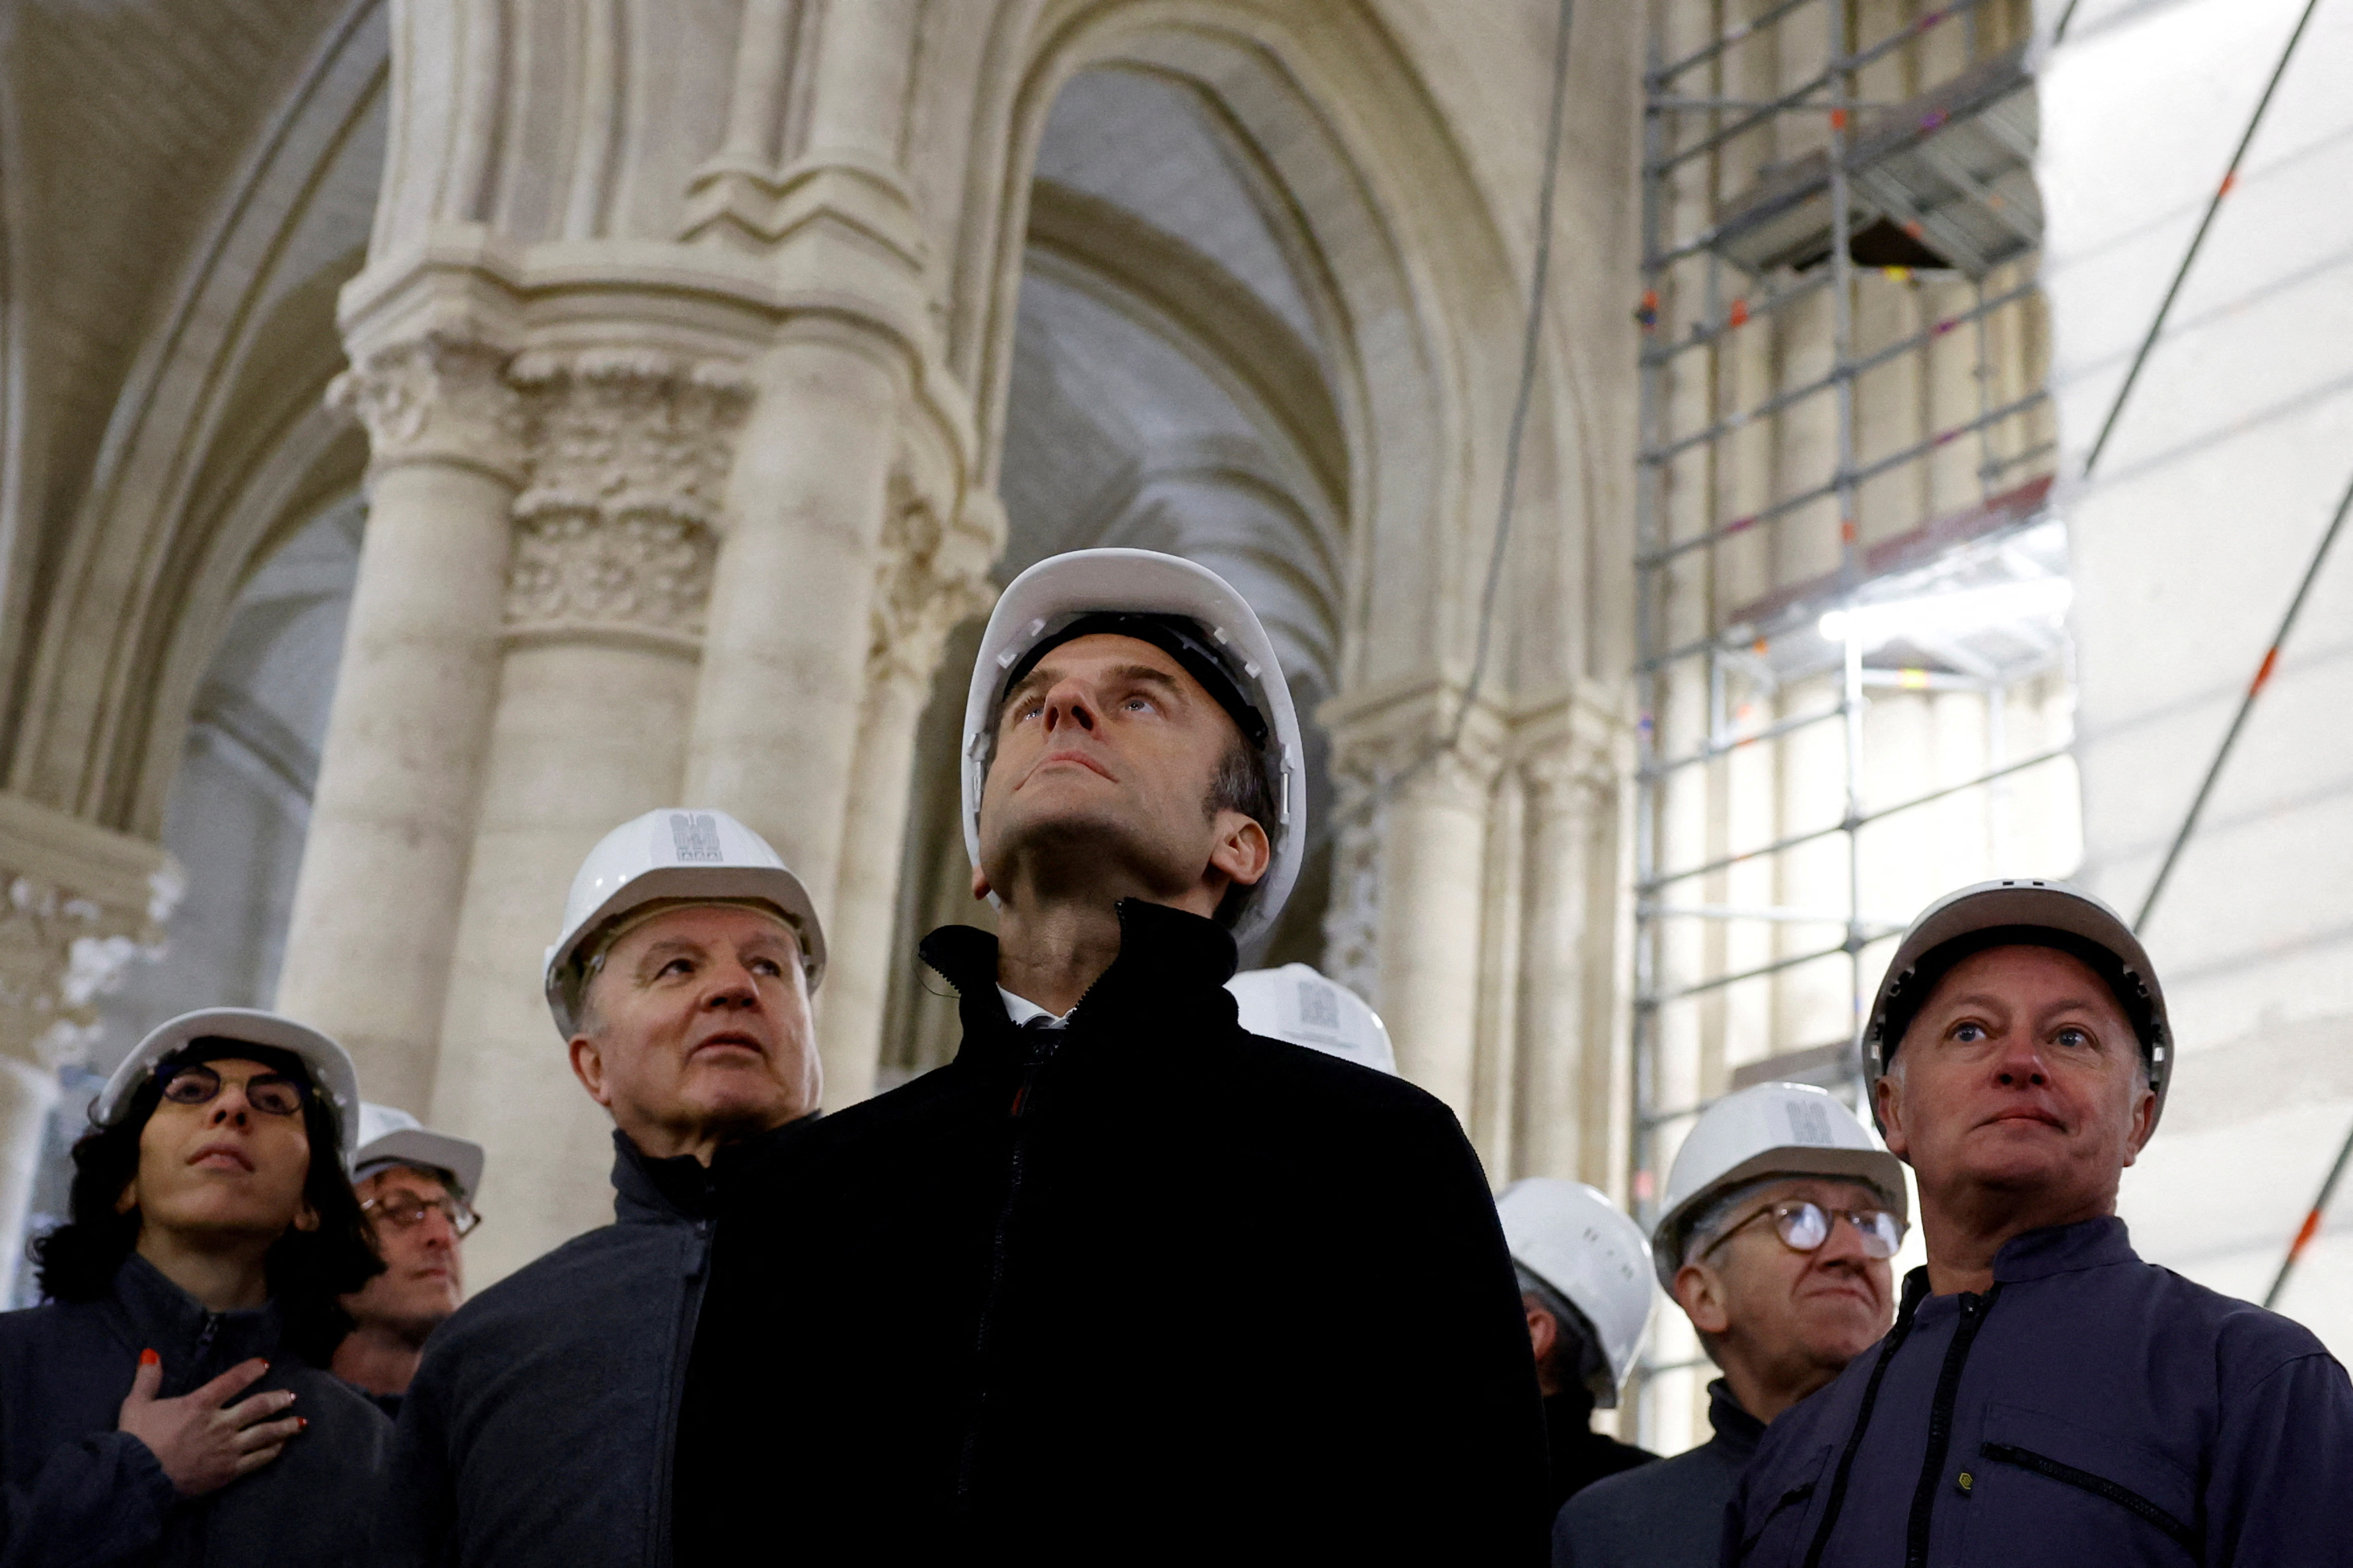 “Notre-Dame revivirá”: el año que viene reabre la gran catedral parisina